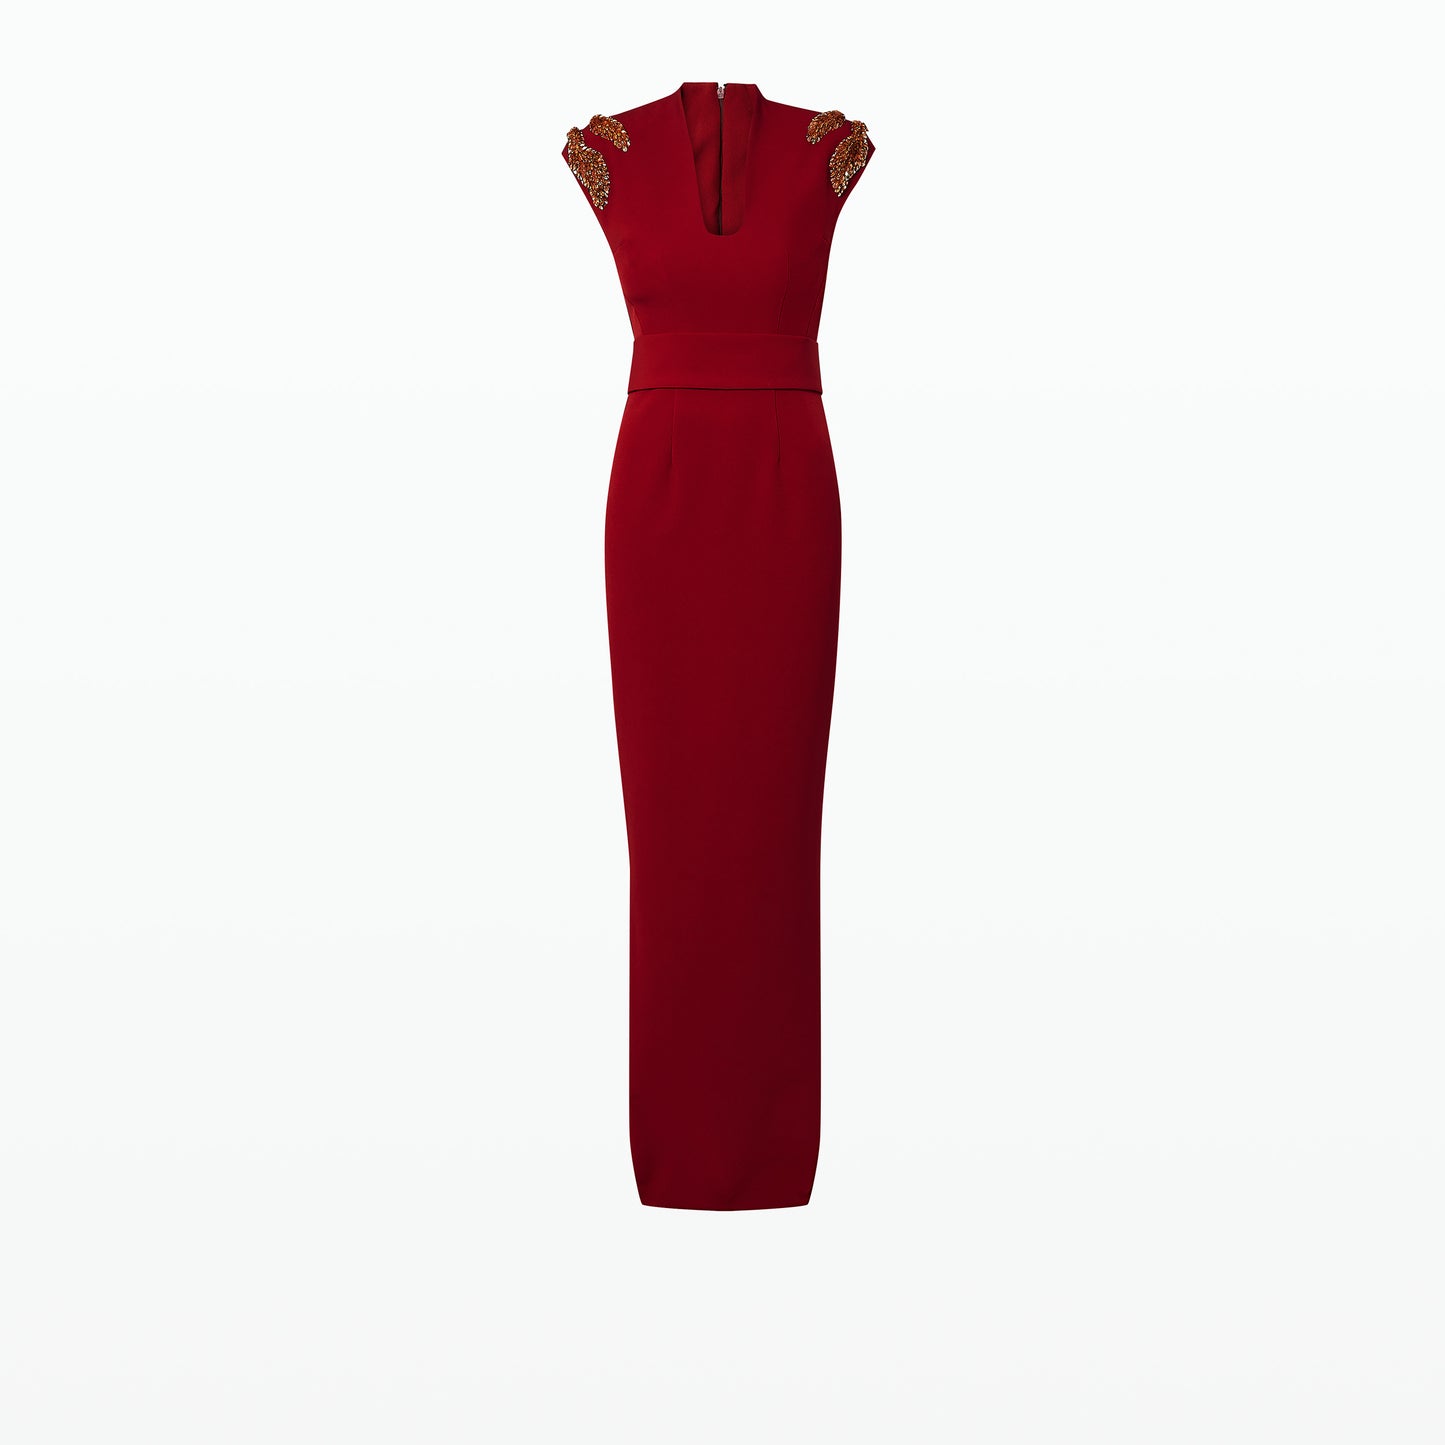 Dana Azalea Red Long Dress